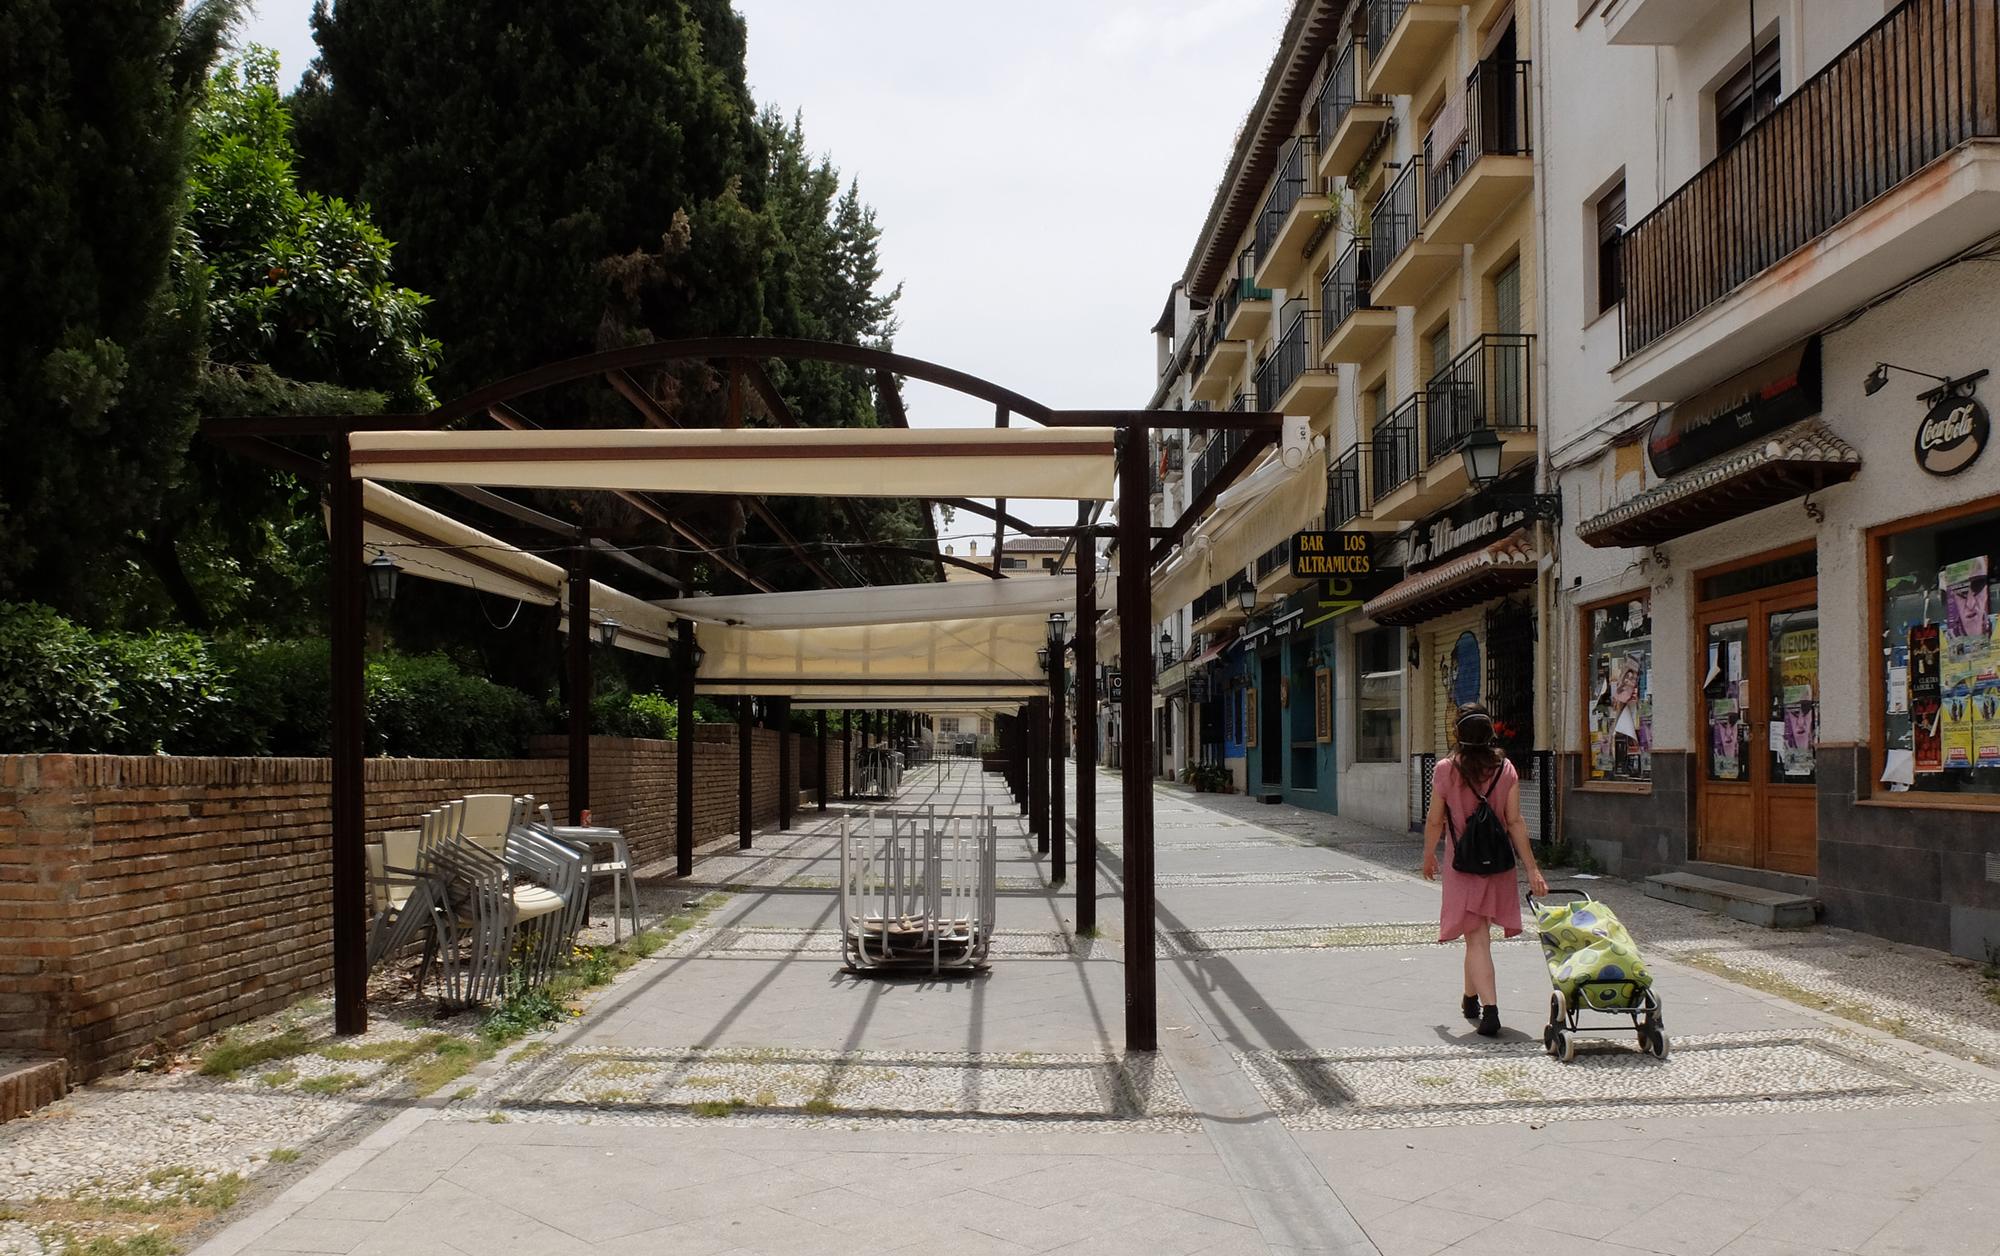 Hostelería Granada coronavirus - terraza cerrada